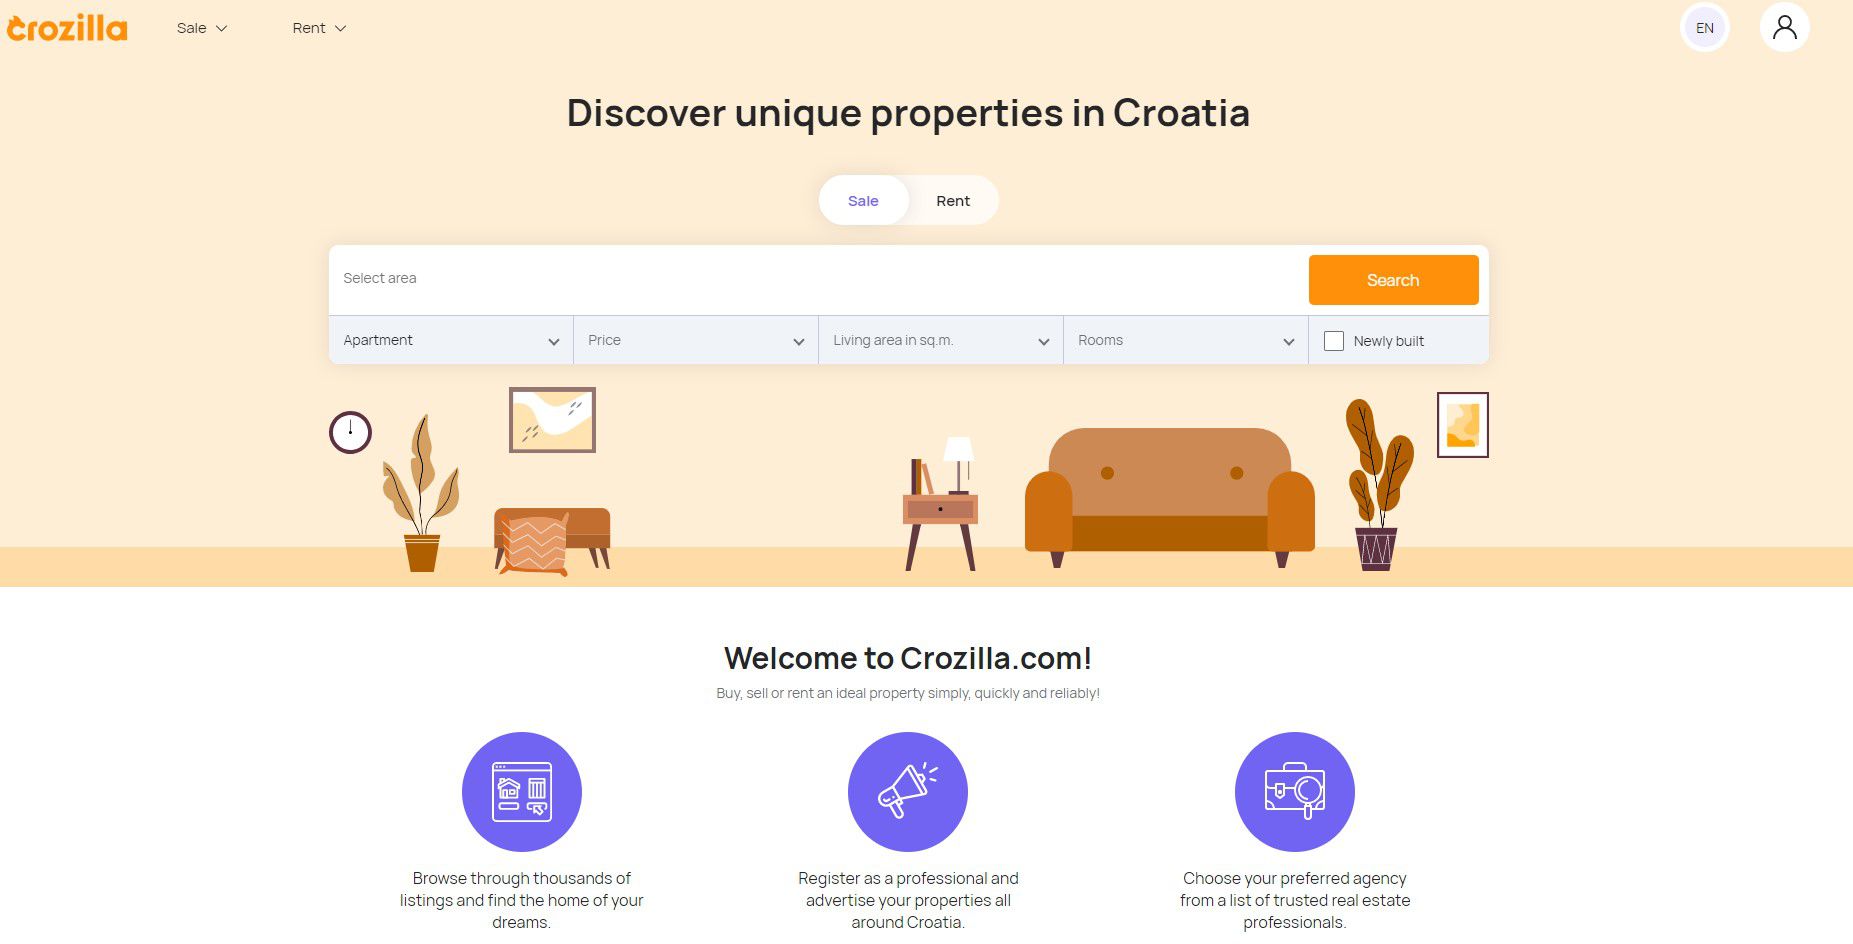 Real Web annuncia l’acquisto del brand Crozilla.com, portale immobiliare leader in Croazia 